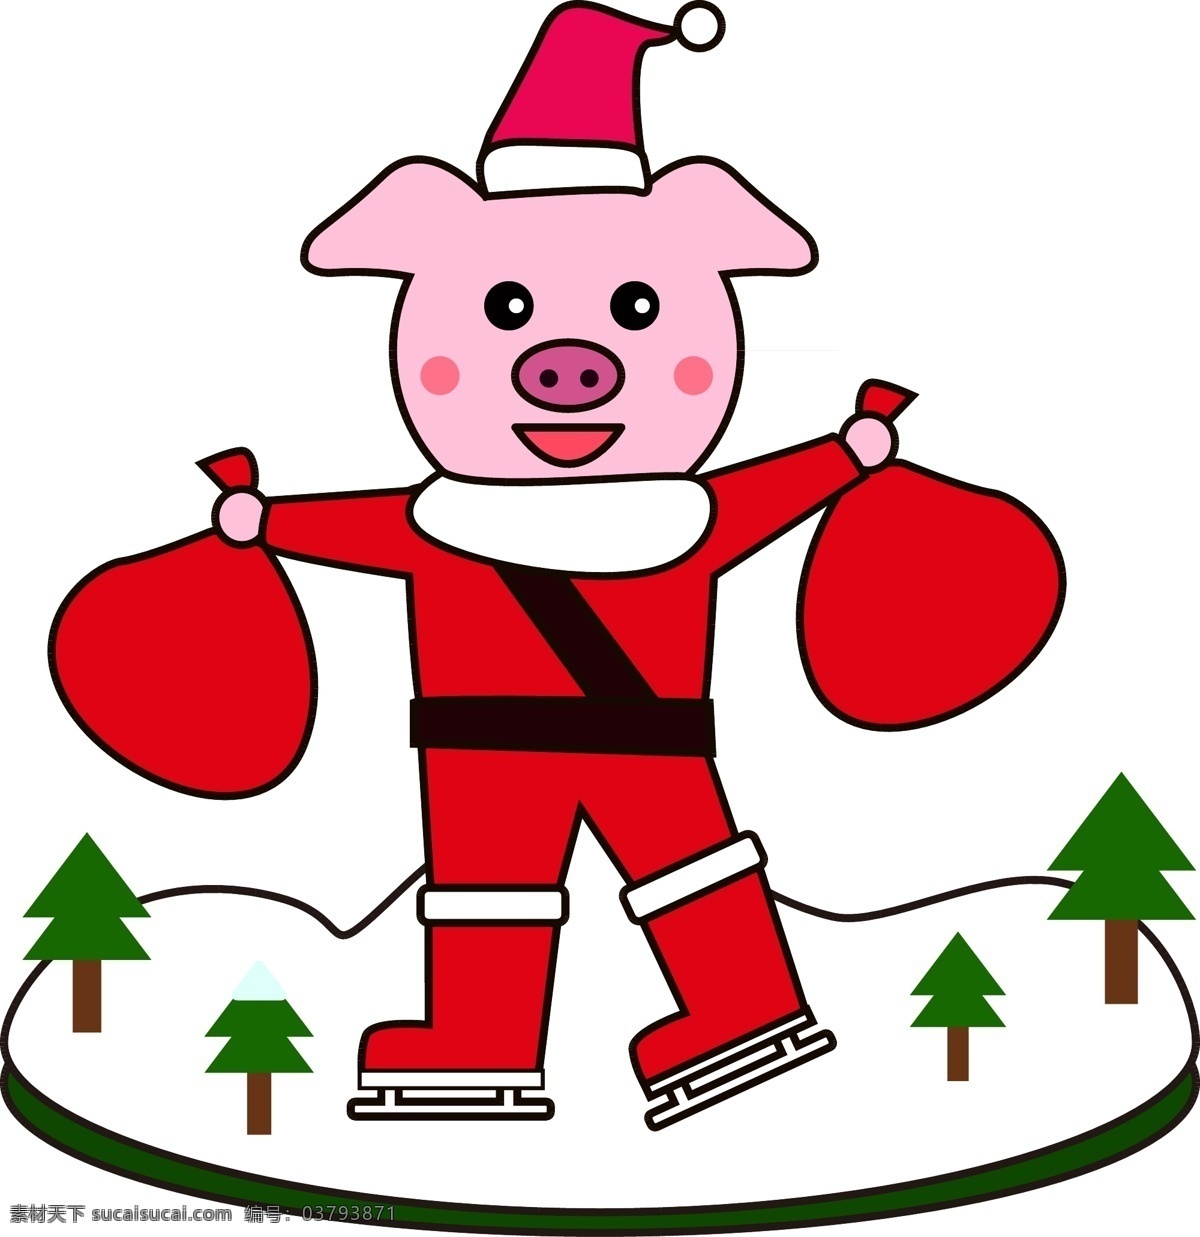 圣诞 猪 可爱 矢量 插图 圣诞节 卡通 礼物 圣诞素材